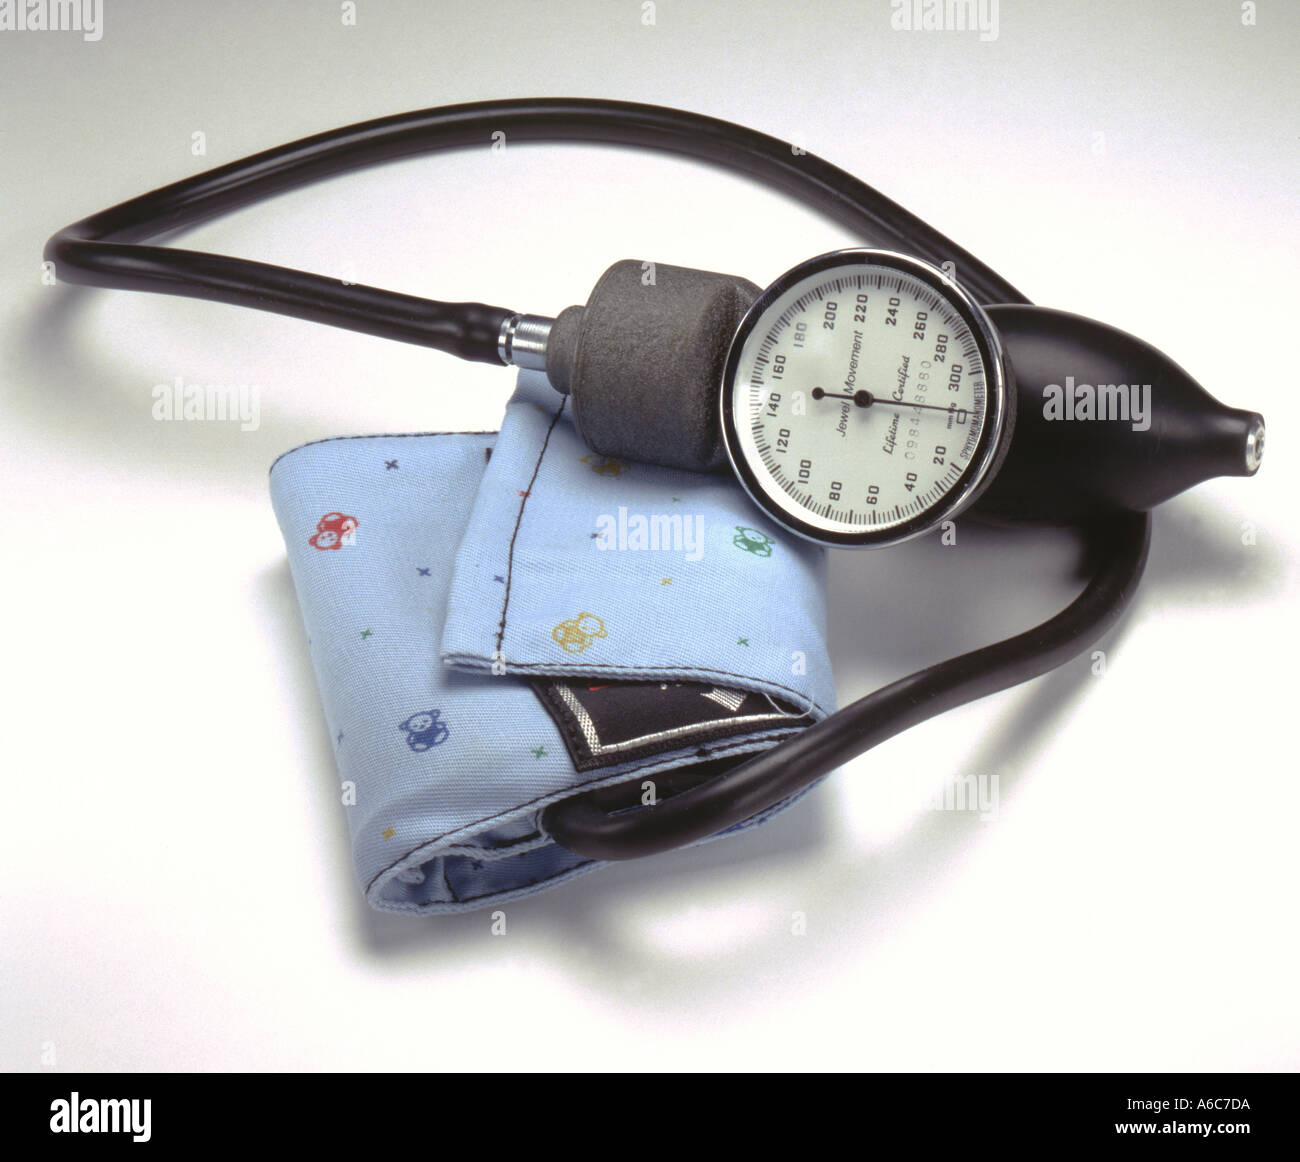 https://c8.alamy.com/comp/A6C7DA/pediatric-blood-pressure-cuff-A6C7DA.jpg